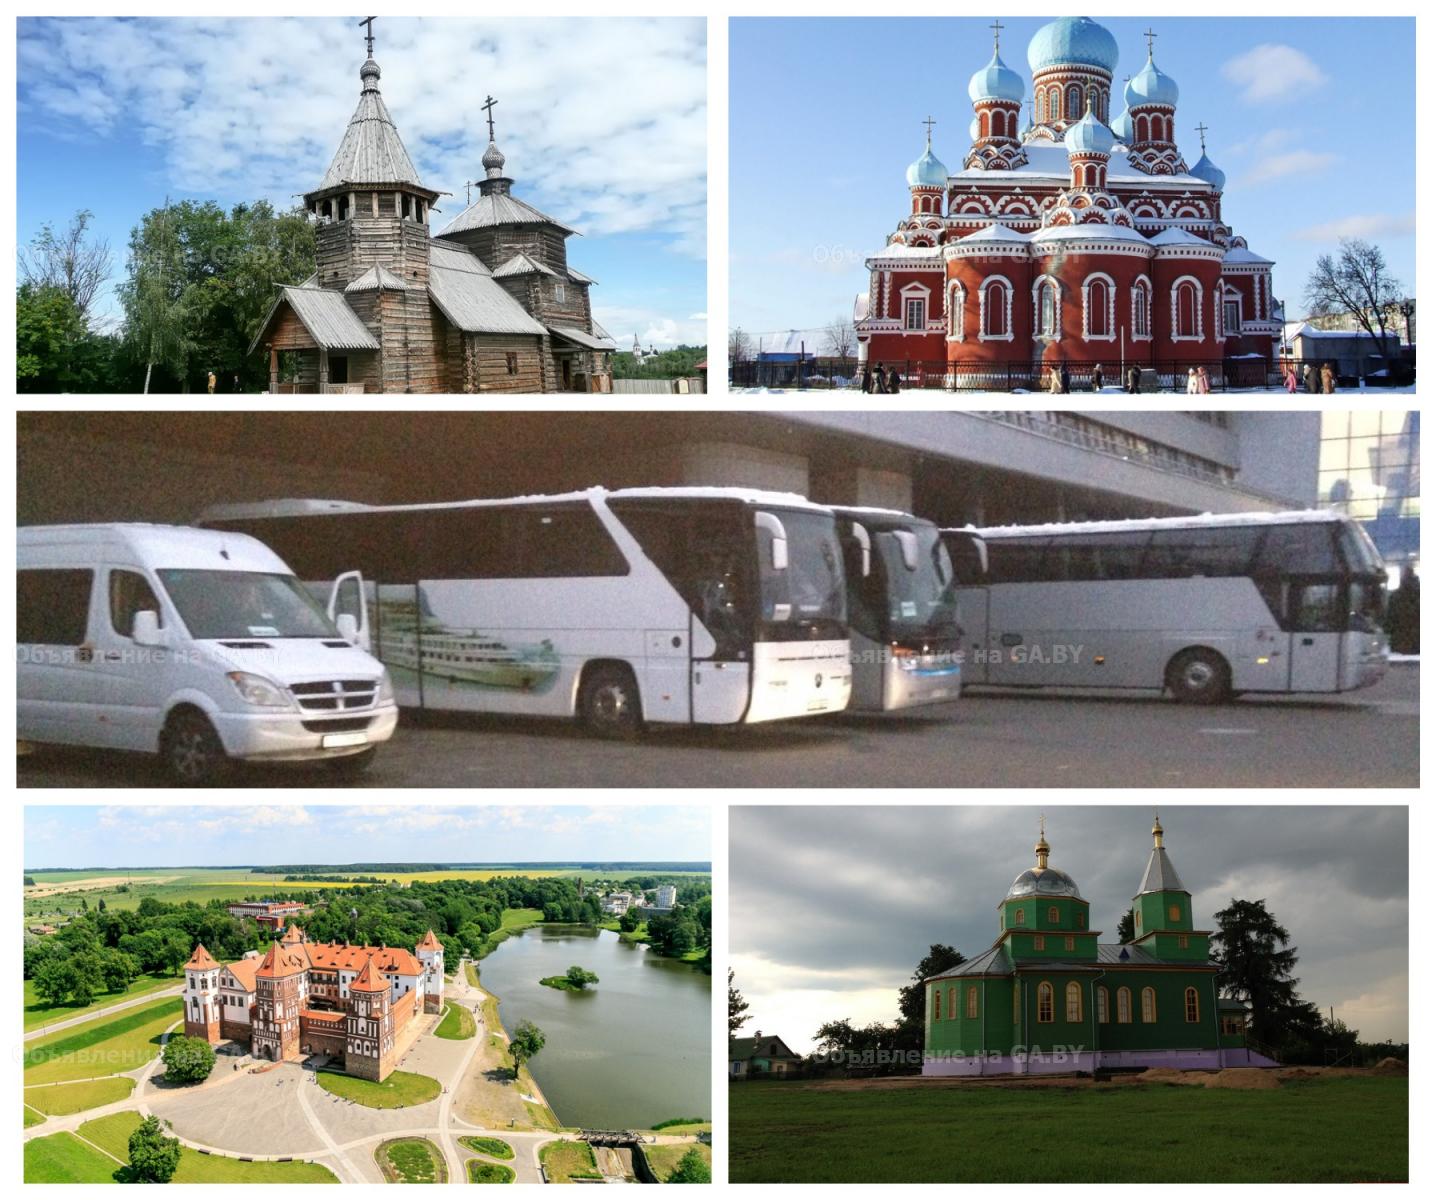 Выполню Экскурсии для организованных групп Минск, Беларусь - GA.BY